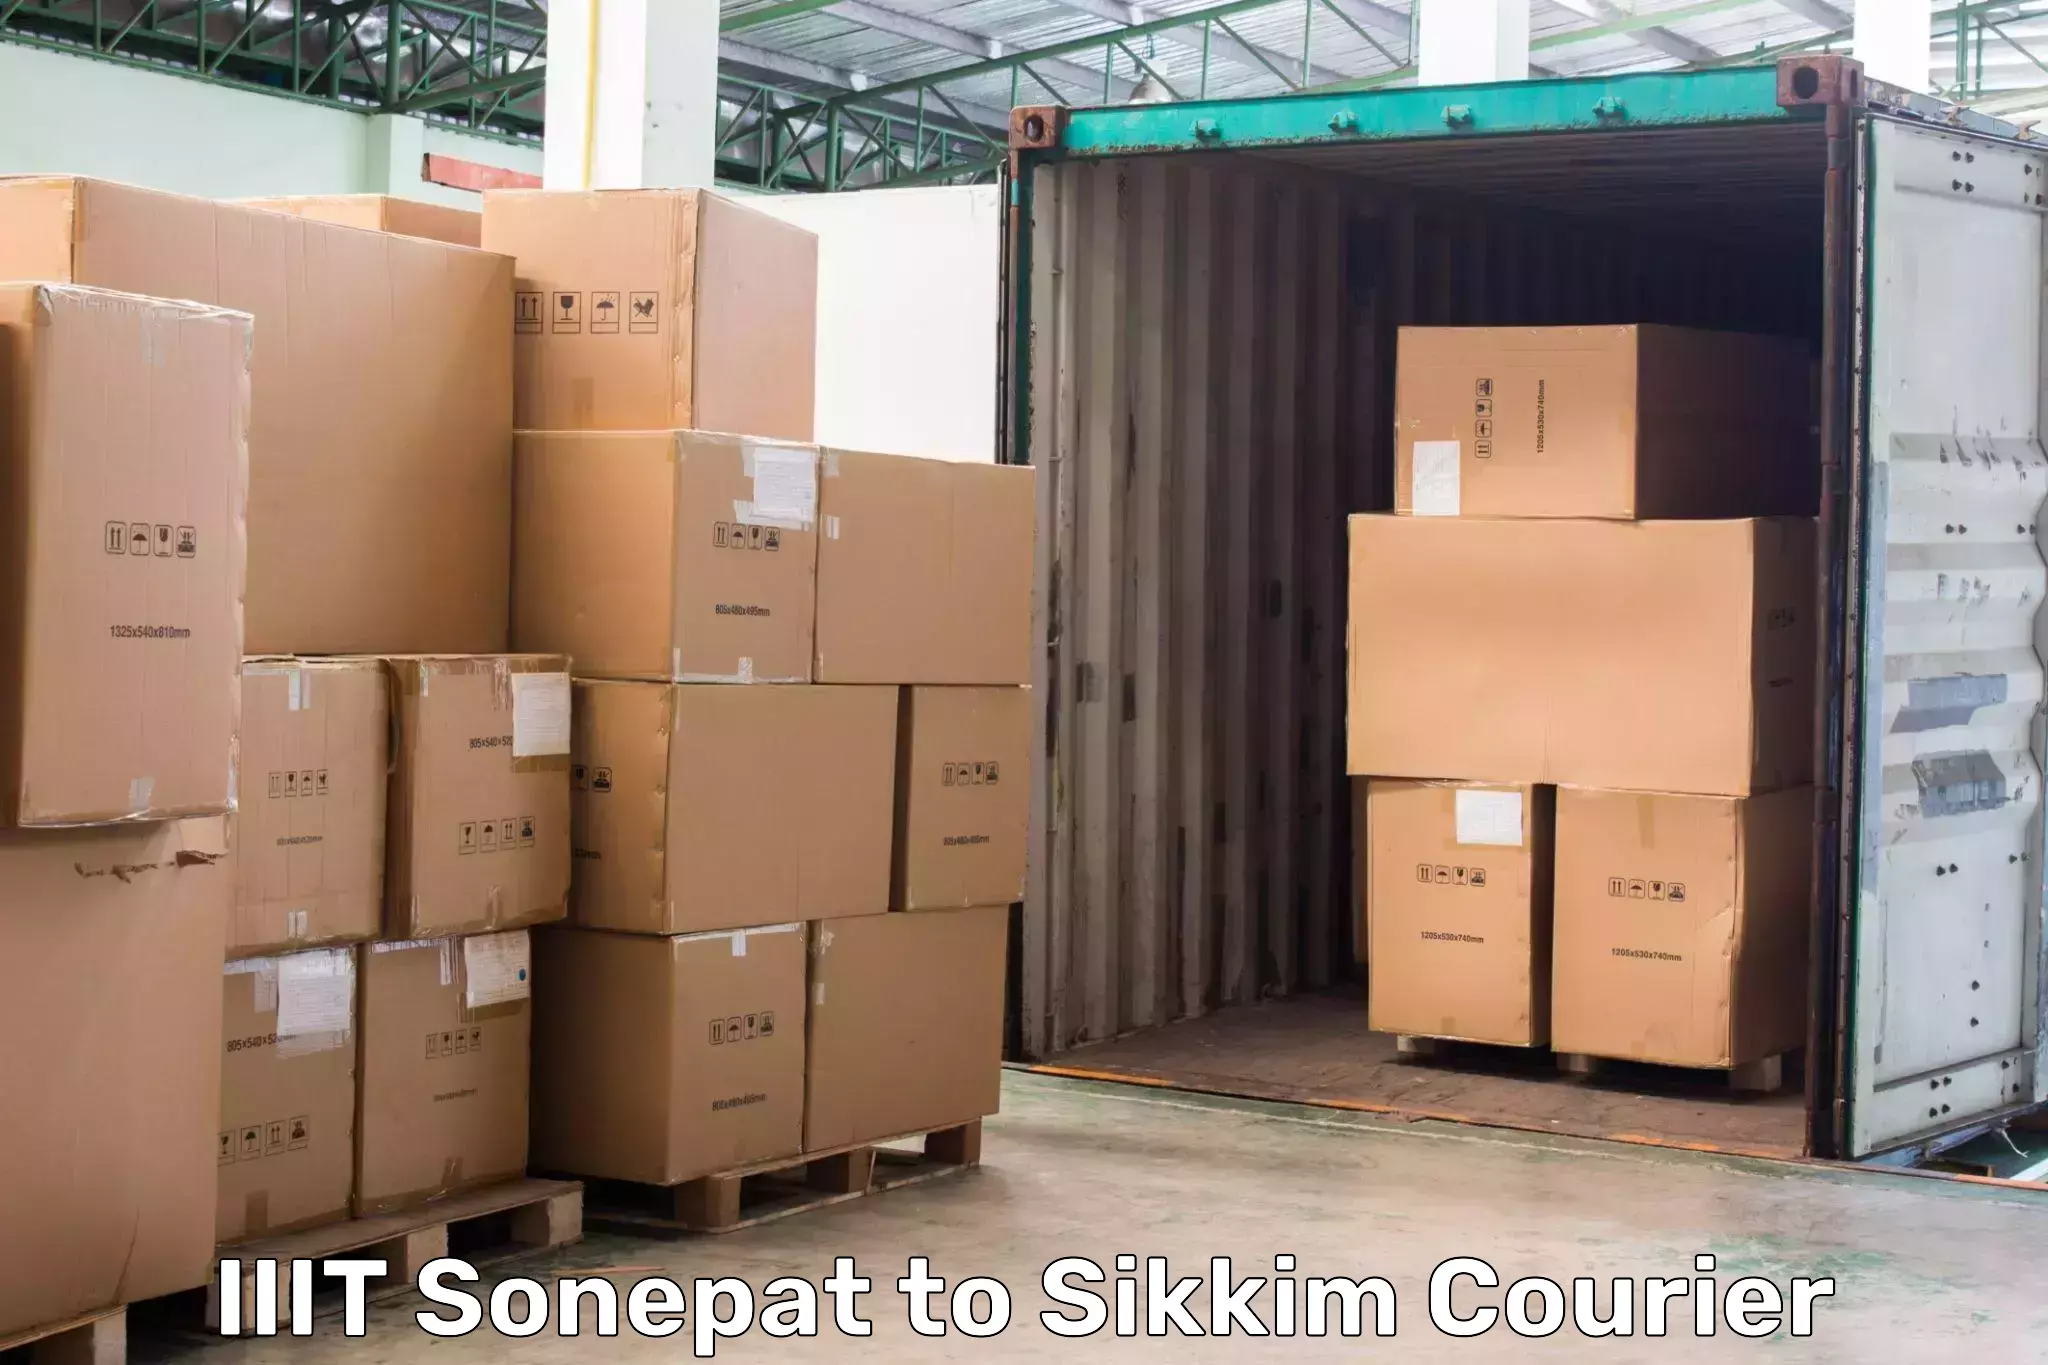 Corporate courier solutions IIIT Sonepat to Geyzing